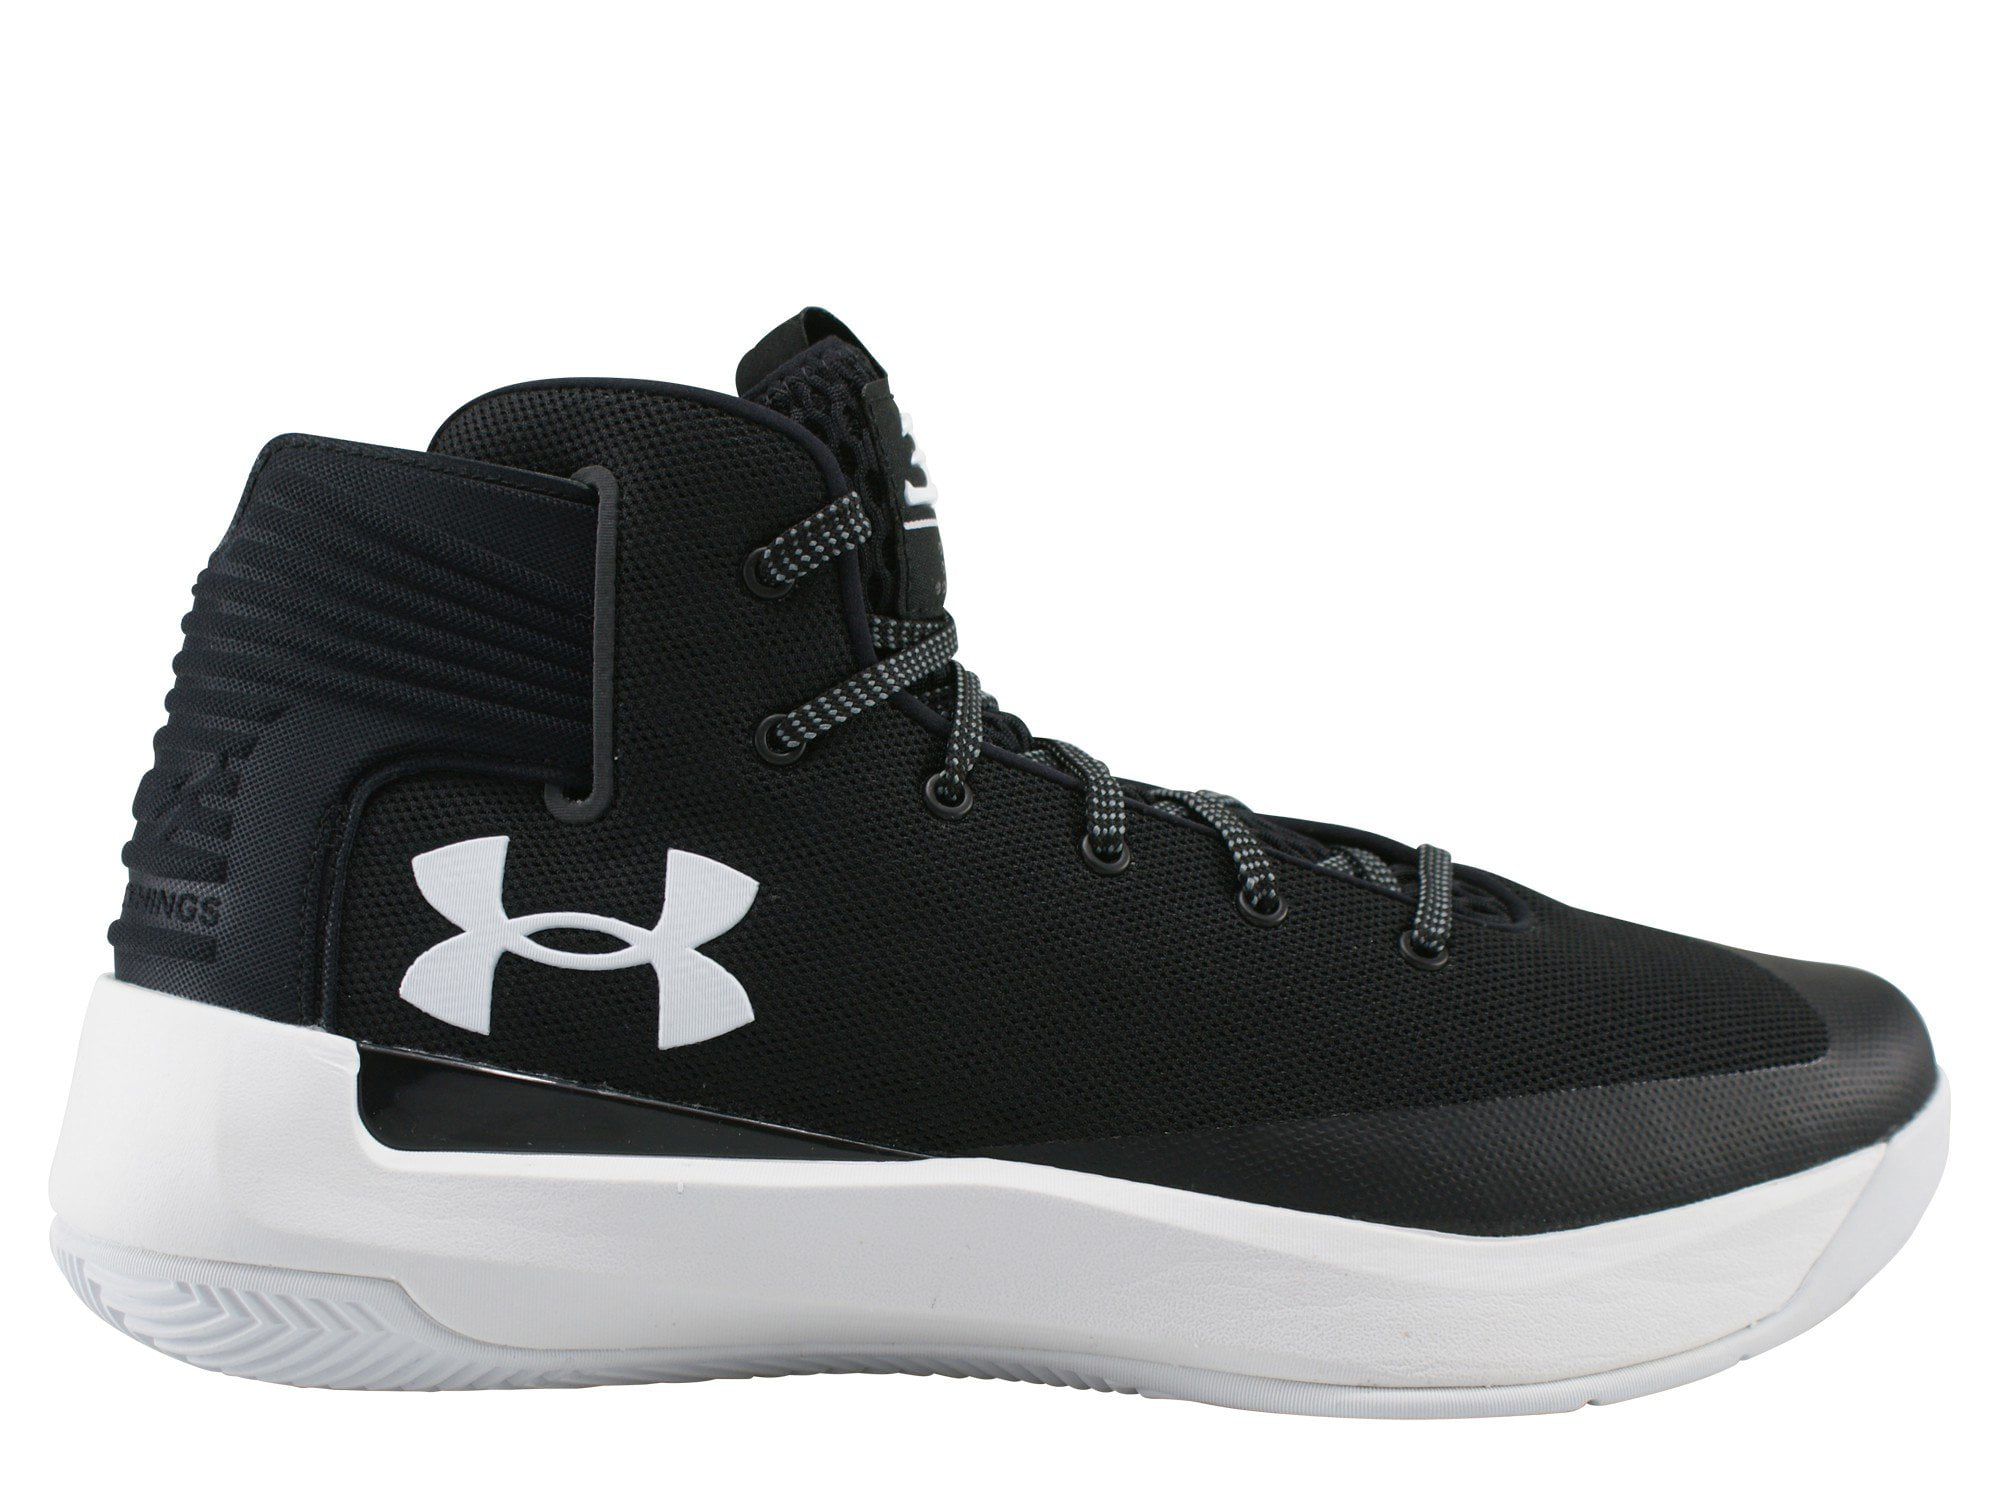 Under Armour 1298308-001 : Men's 3Zero Black/White Athletic Shoe (9 D(M) US) - Walmart.com